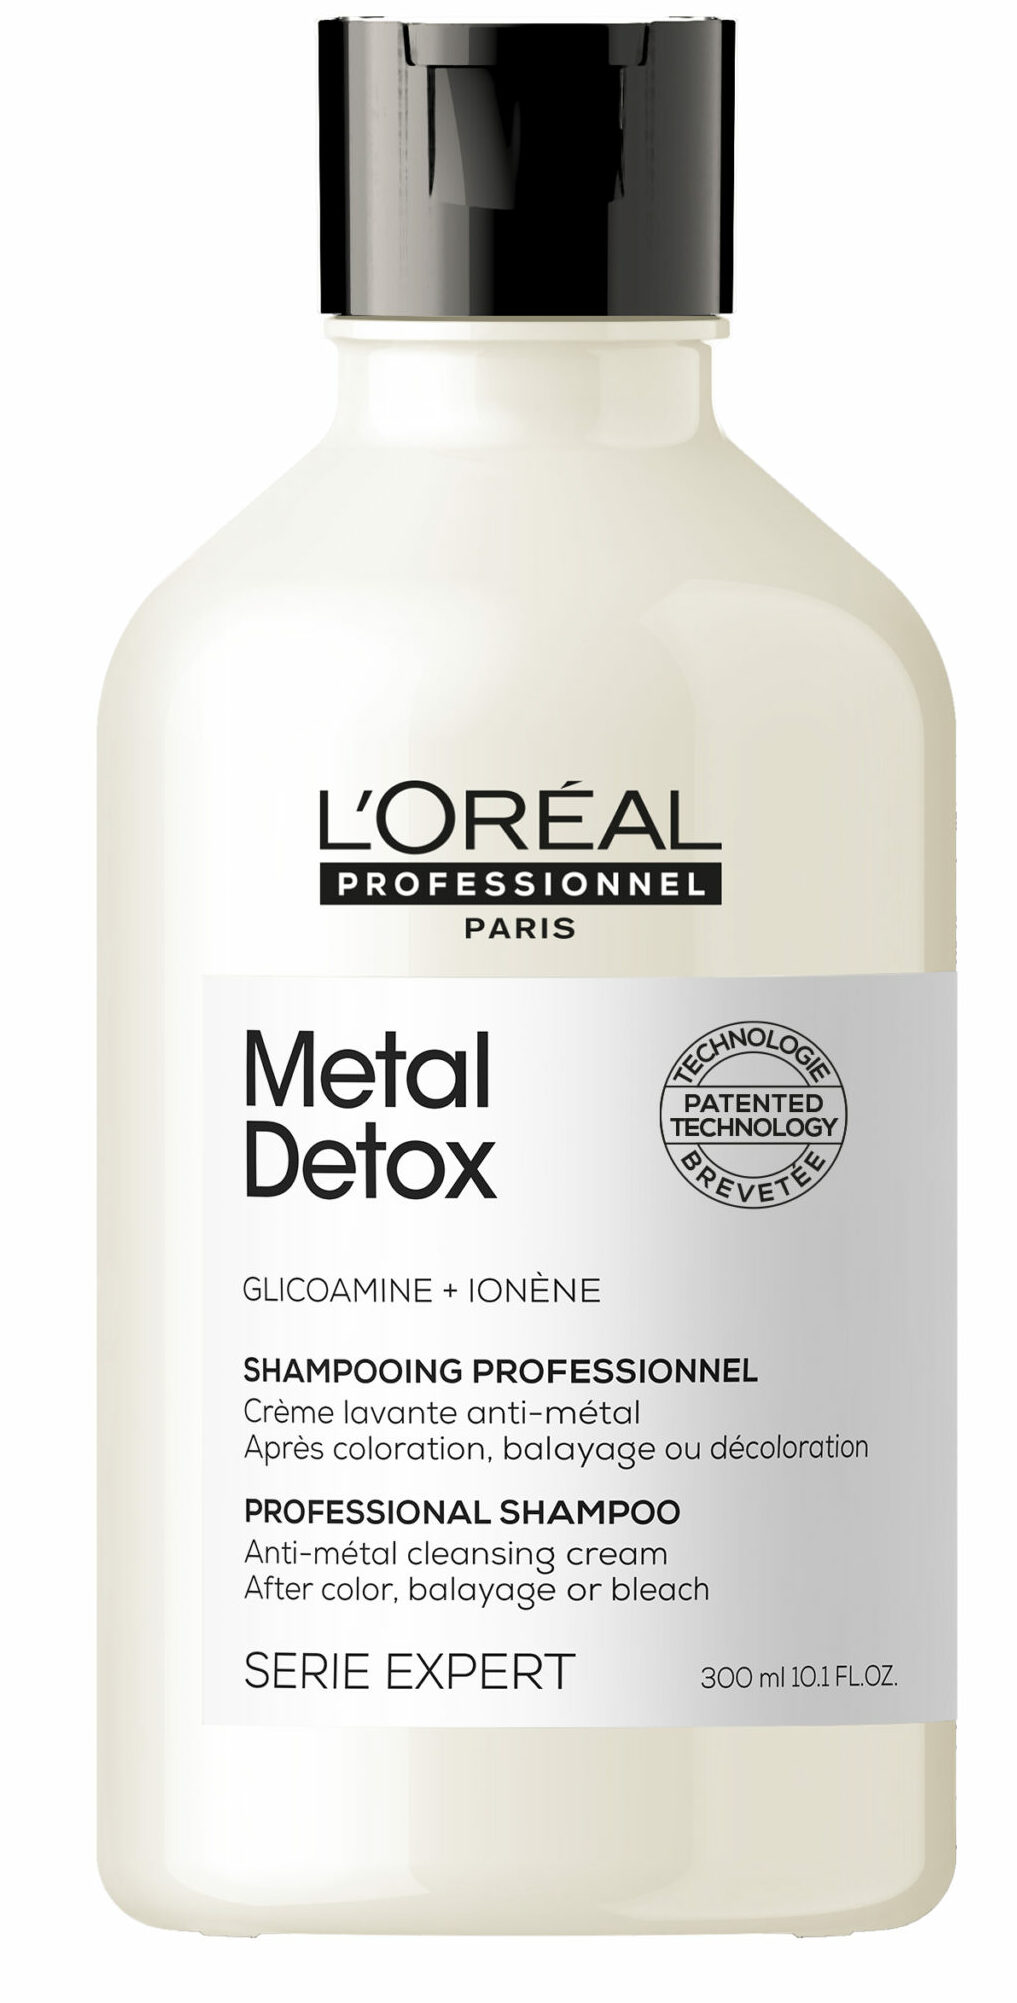 Metal detox shampoo